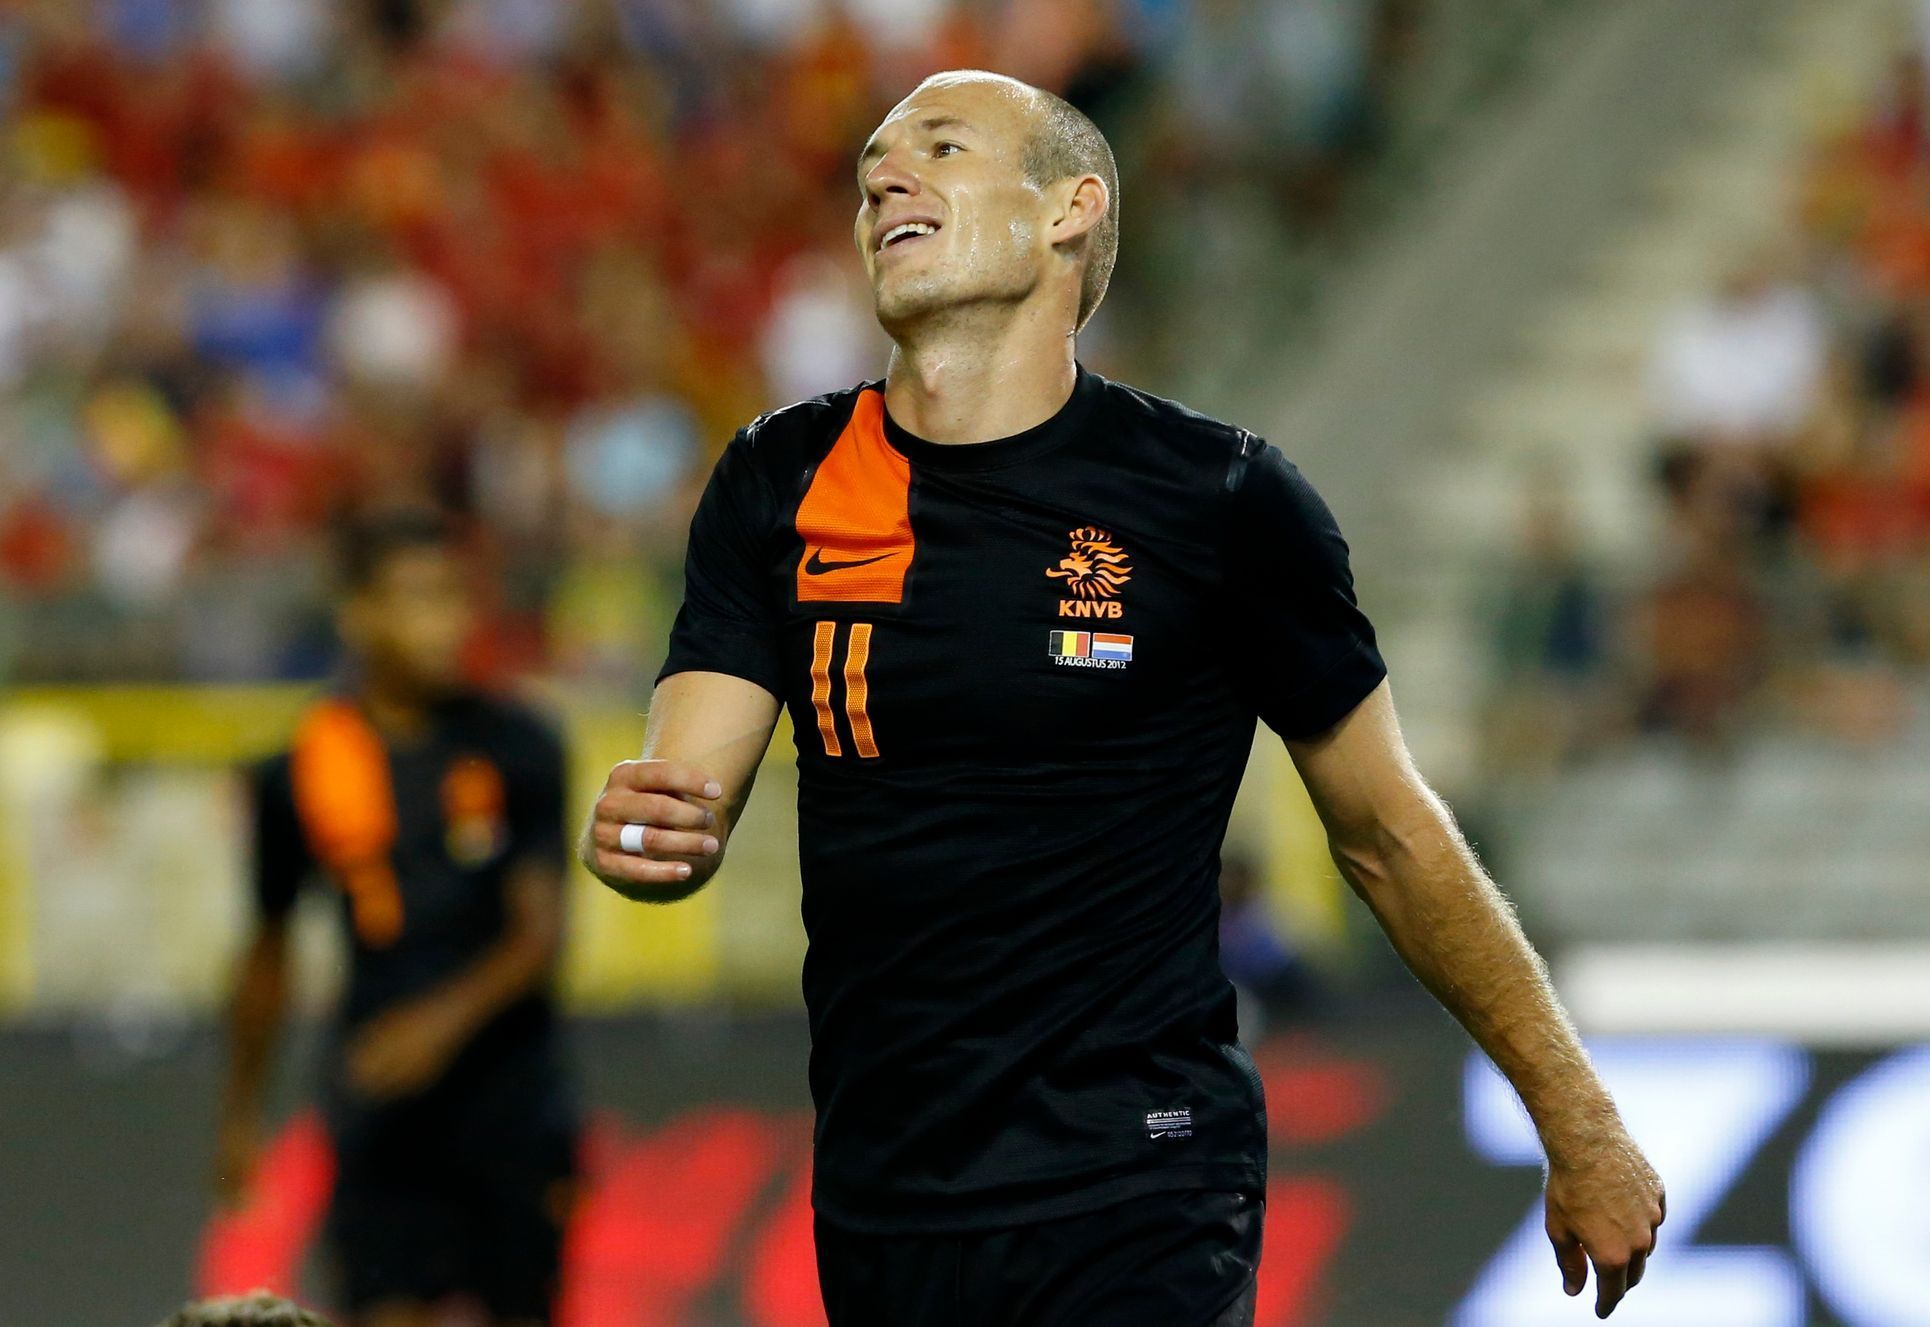 Gesto zklamání v podání Arjena Robbena v přátelském zápase v Belgii